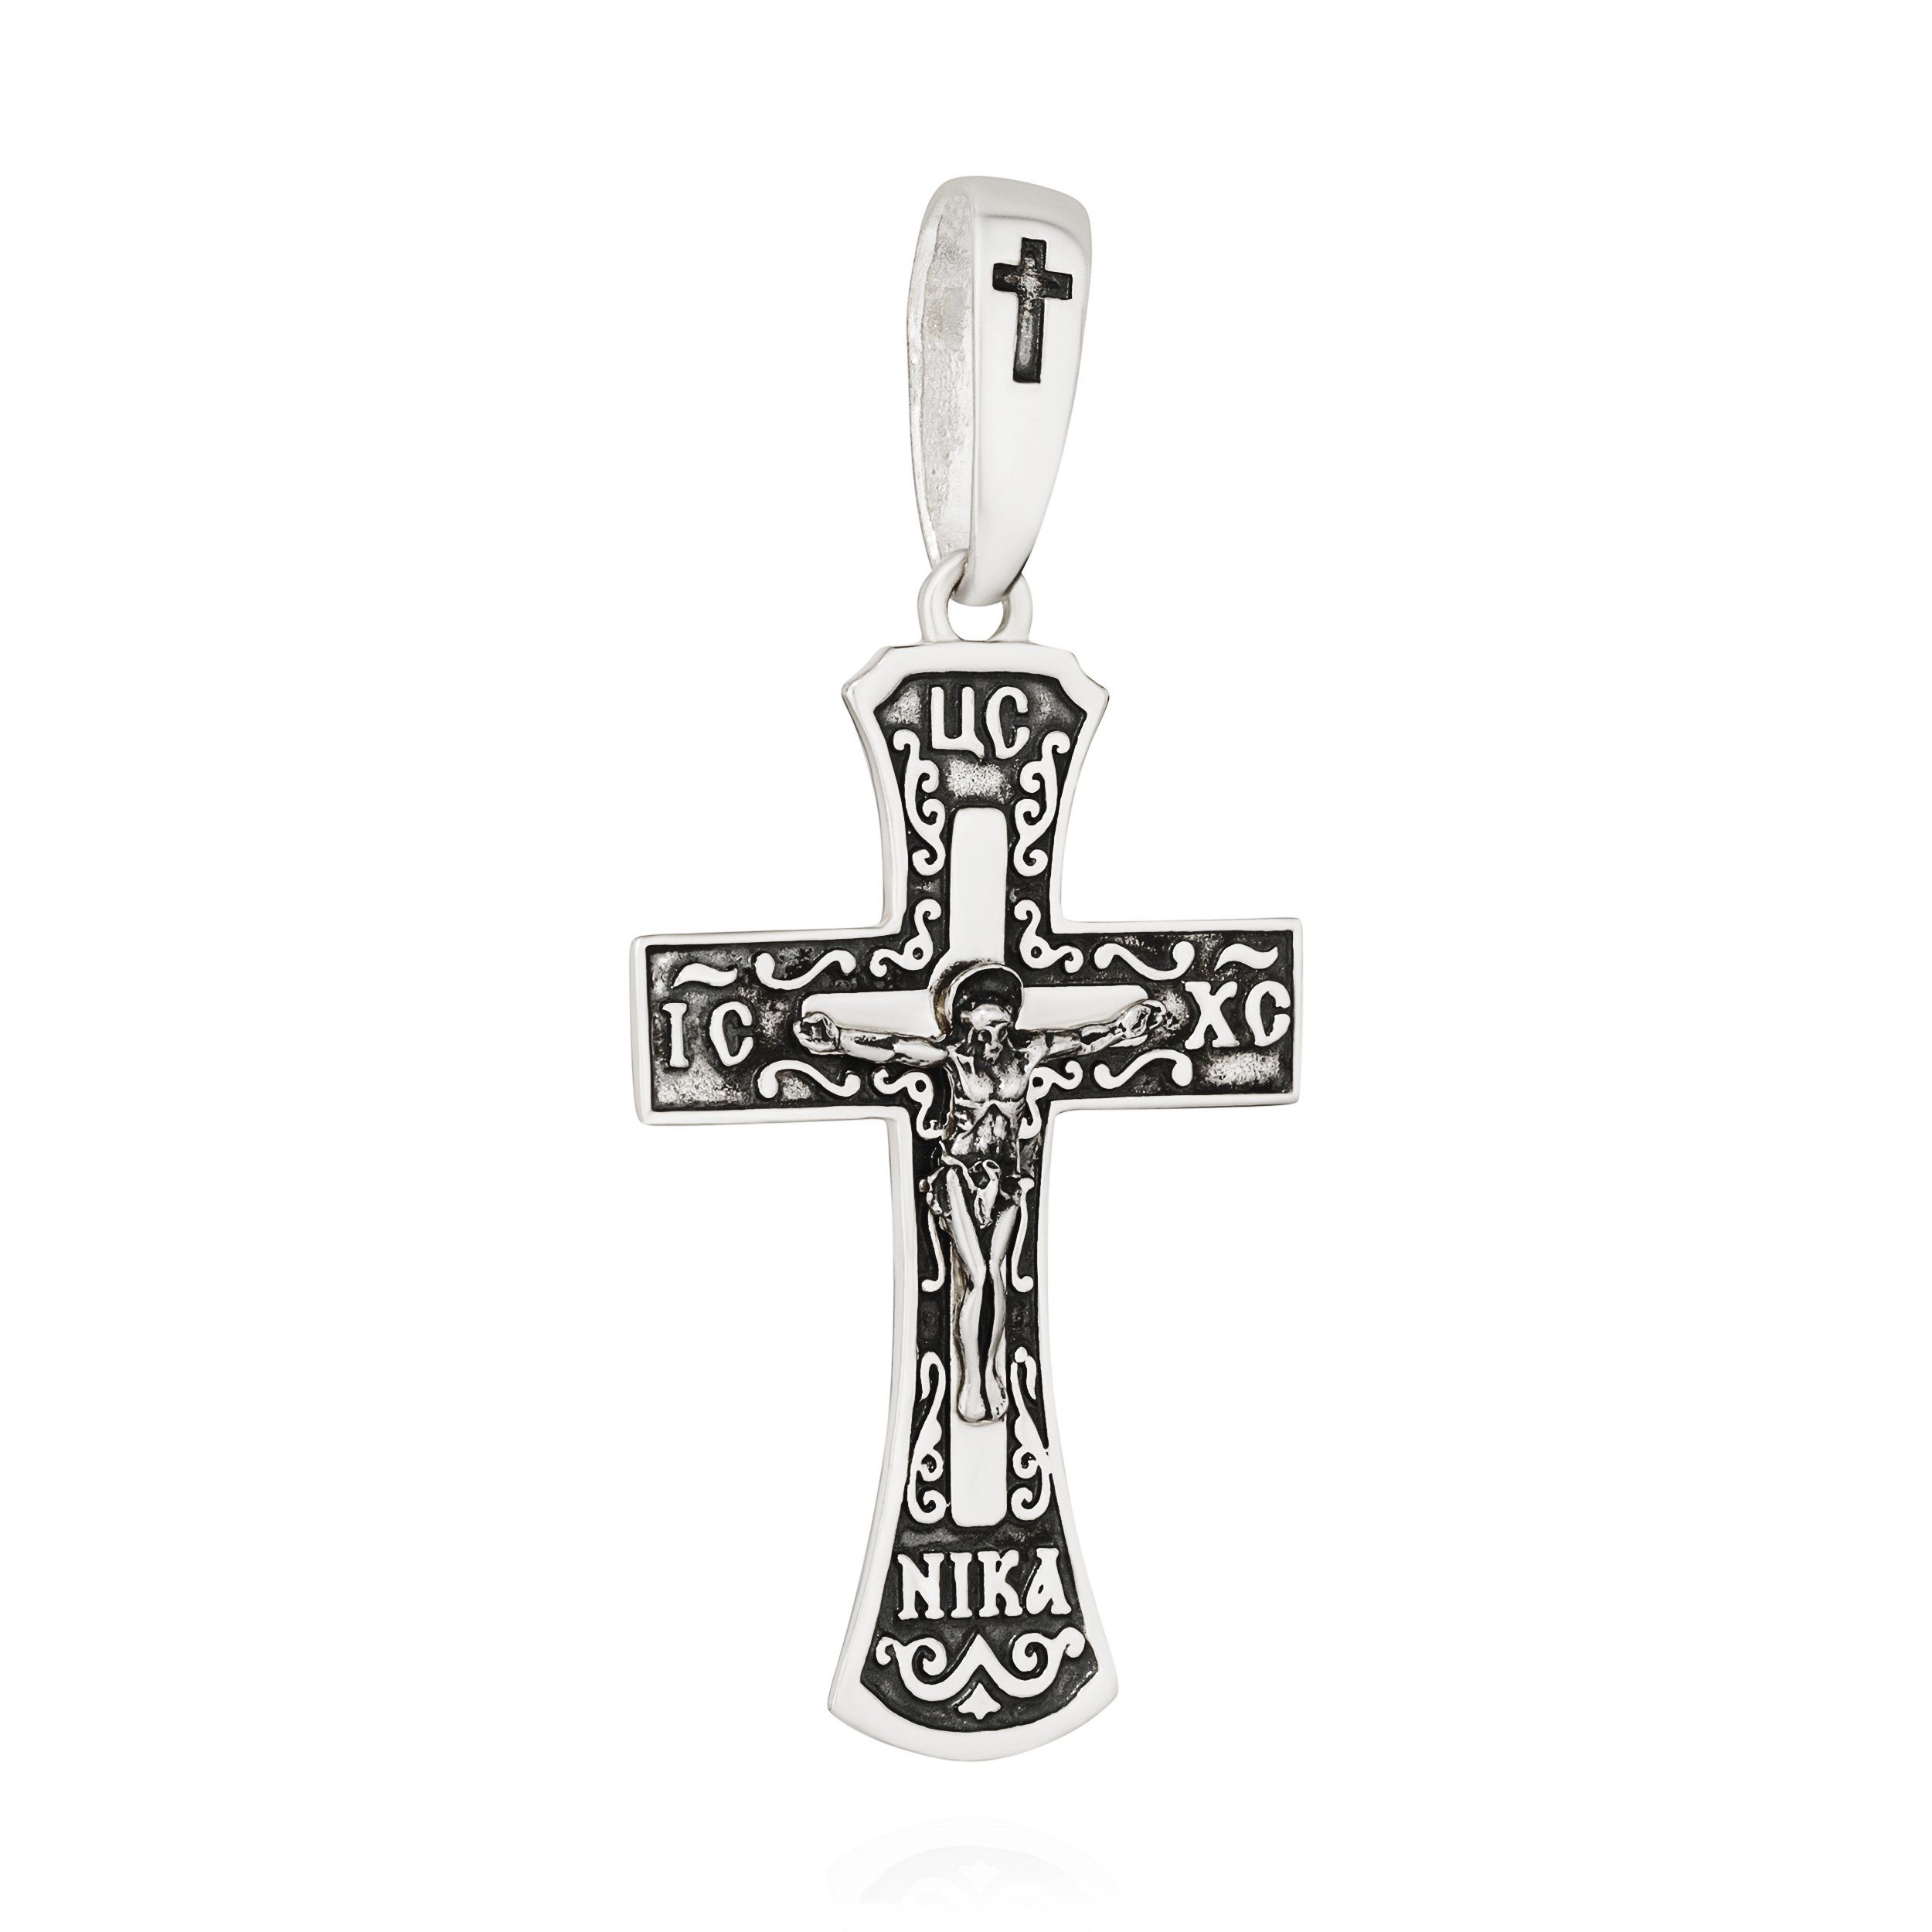 NKlaus Kettenanhänger Kettenanhänger Kreuz 925 Silber 36,6mm x 25mm Kruzifix Jesus Christus